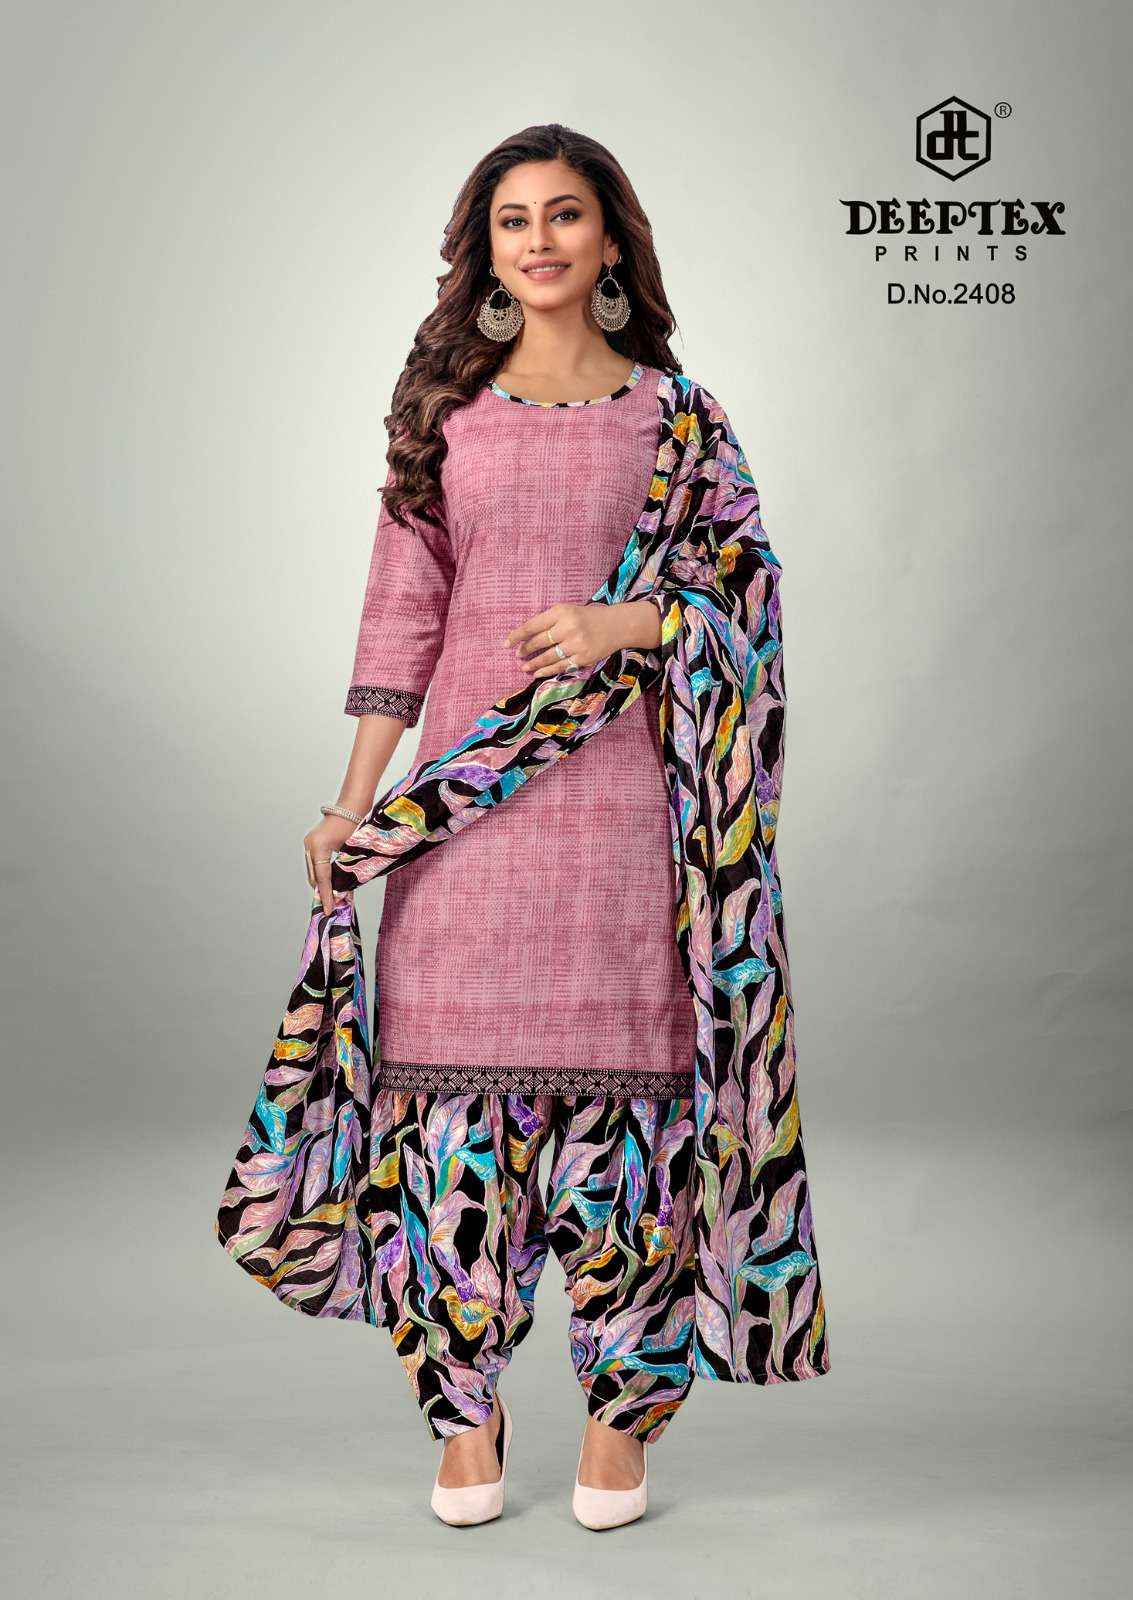 Deeptex Prints Pichkari Vol 24 Cotton Dress Material 10 pcs Catalogue